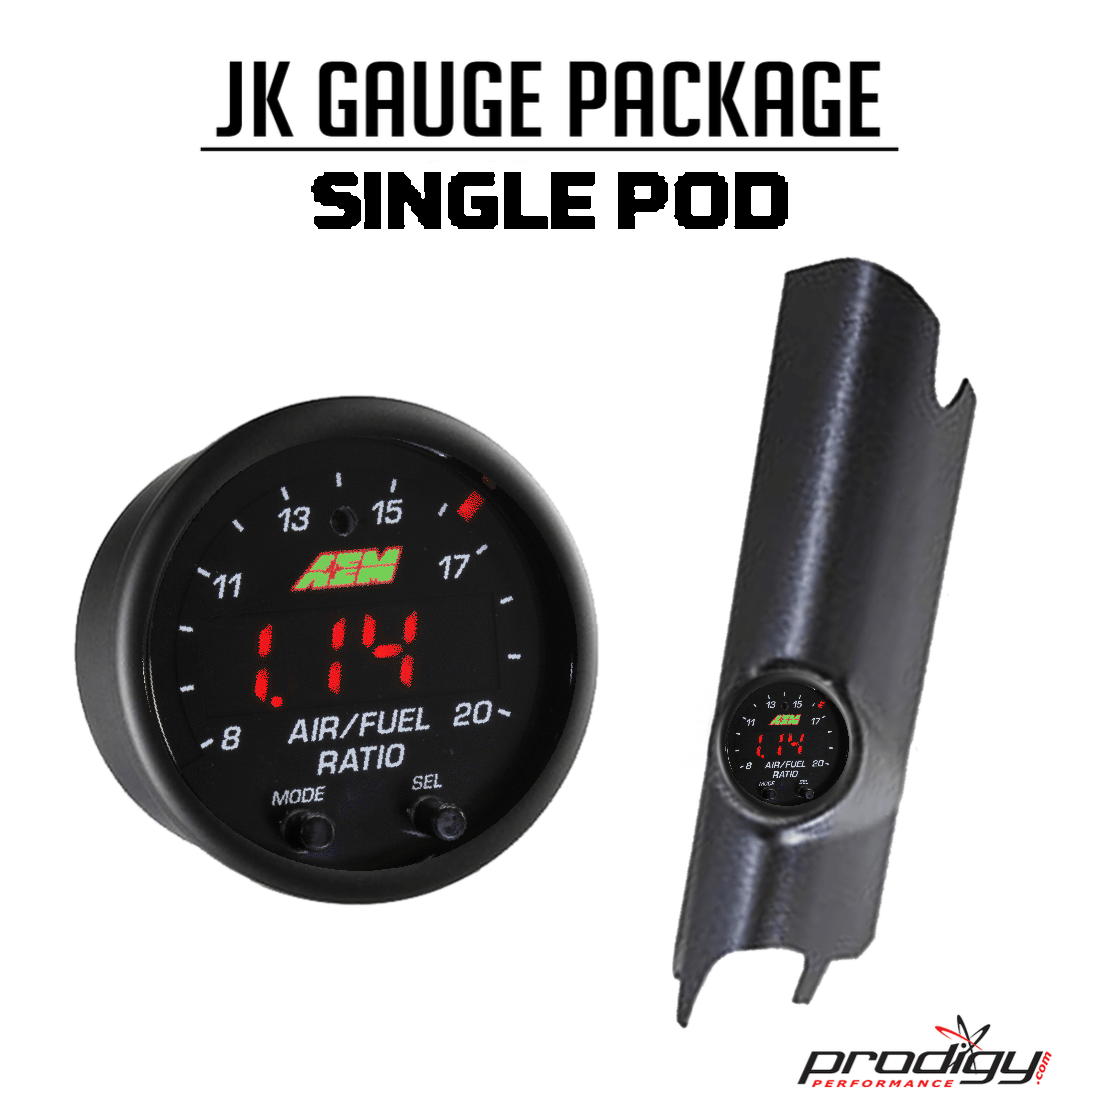 Jk Gauge Package (single pod)